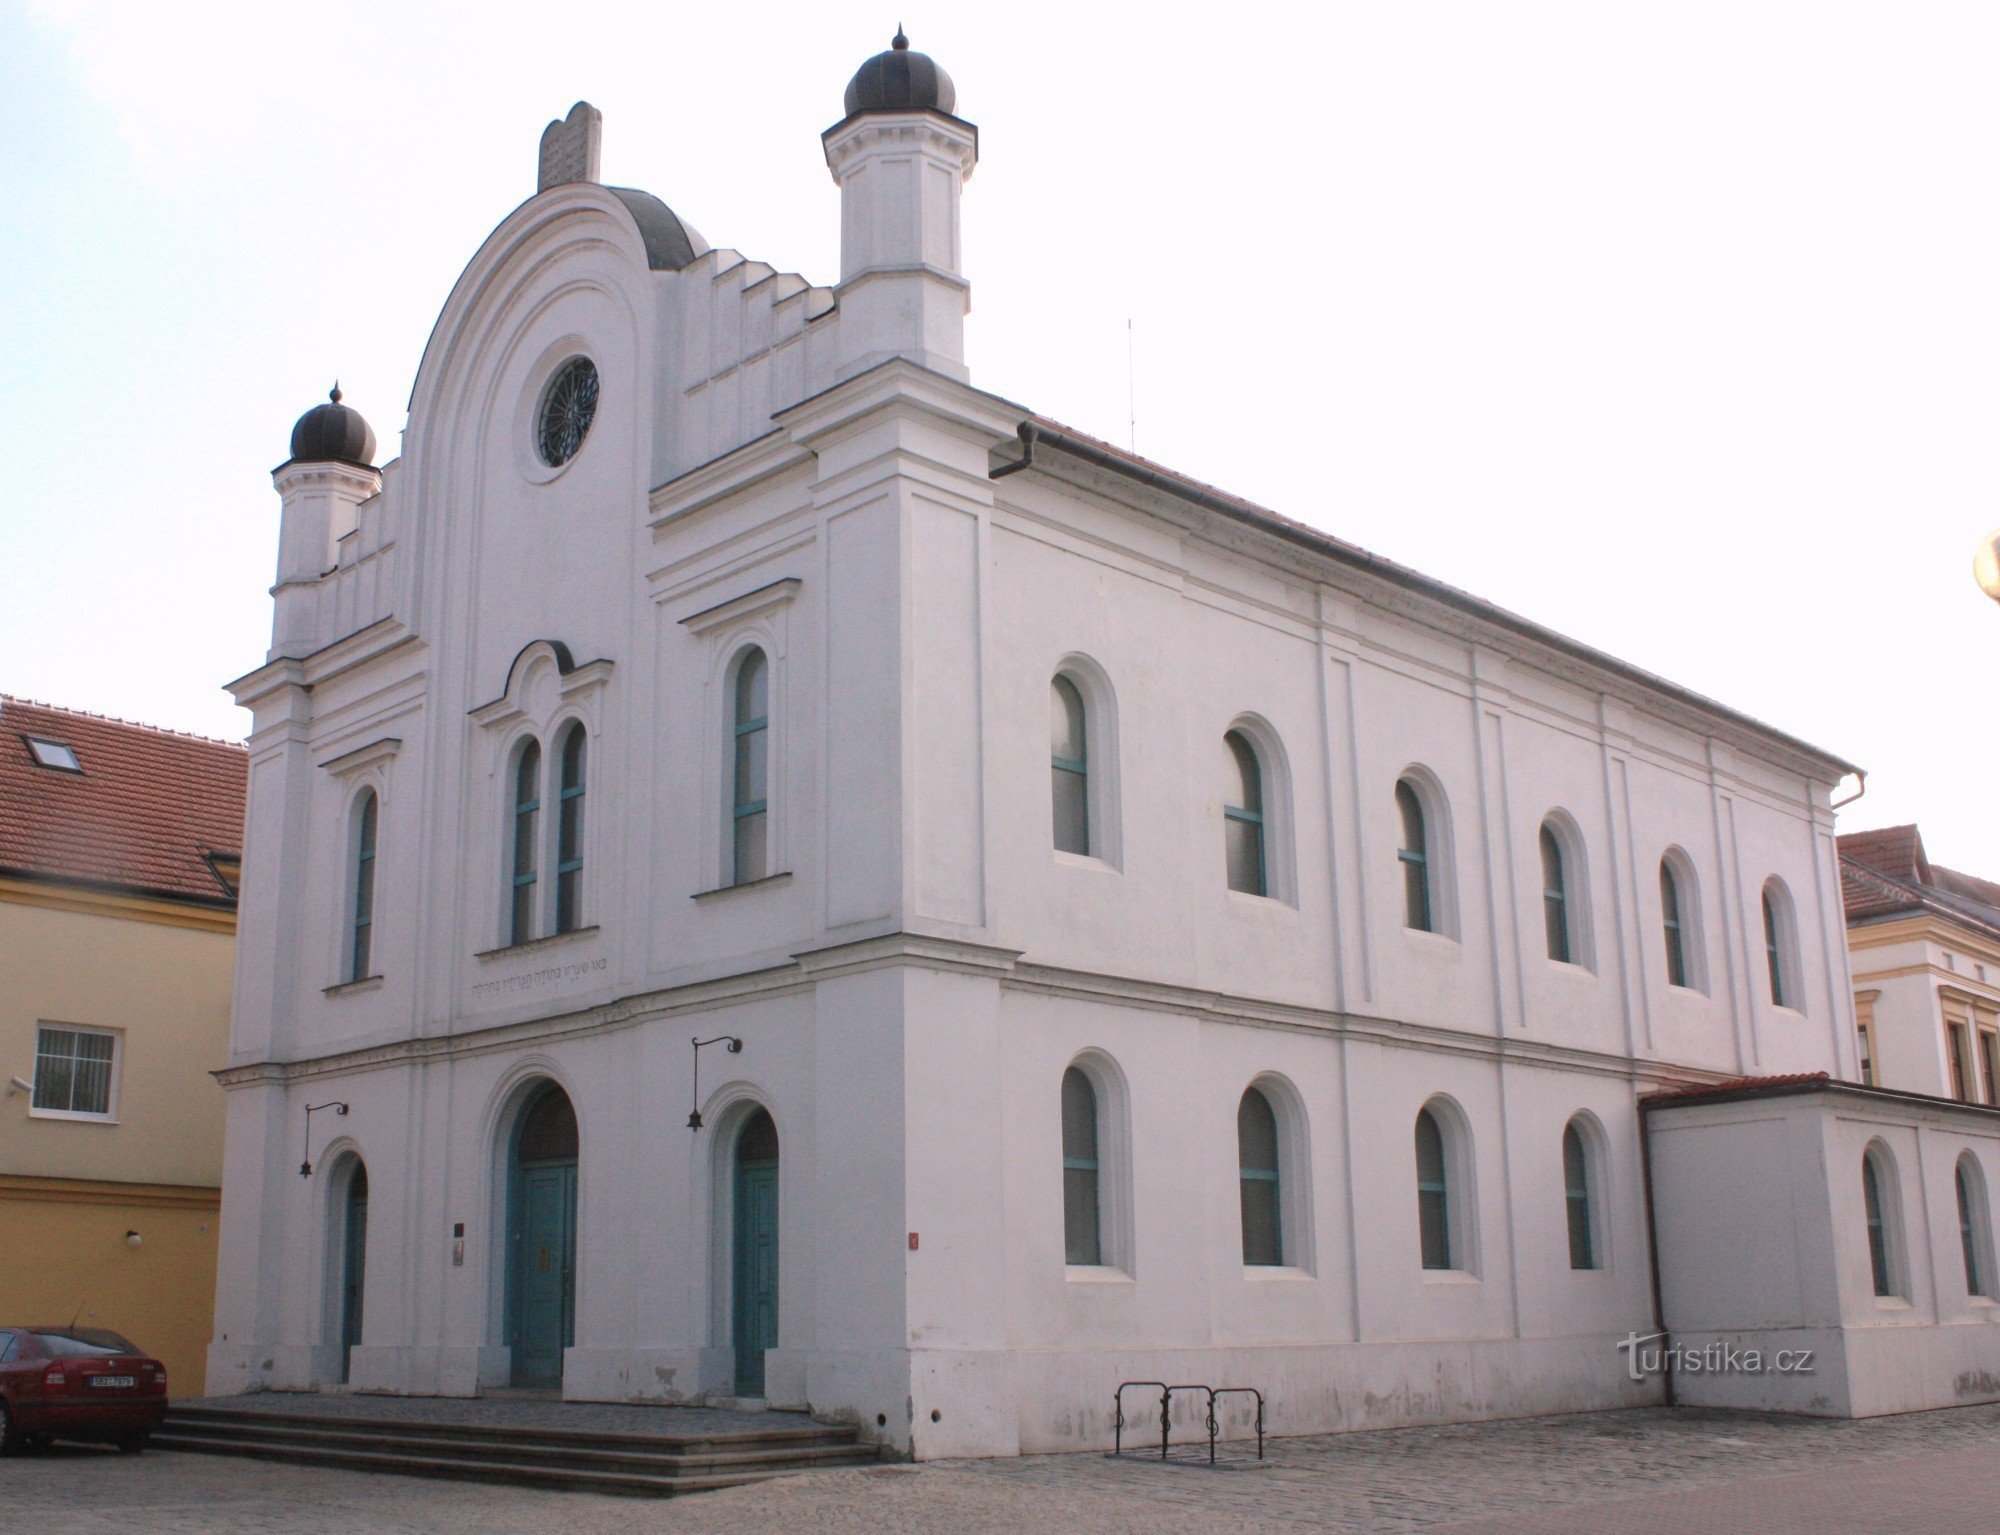 Břeclav - före detta synagoga